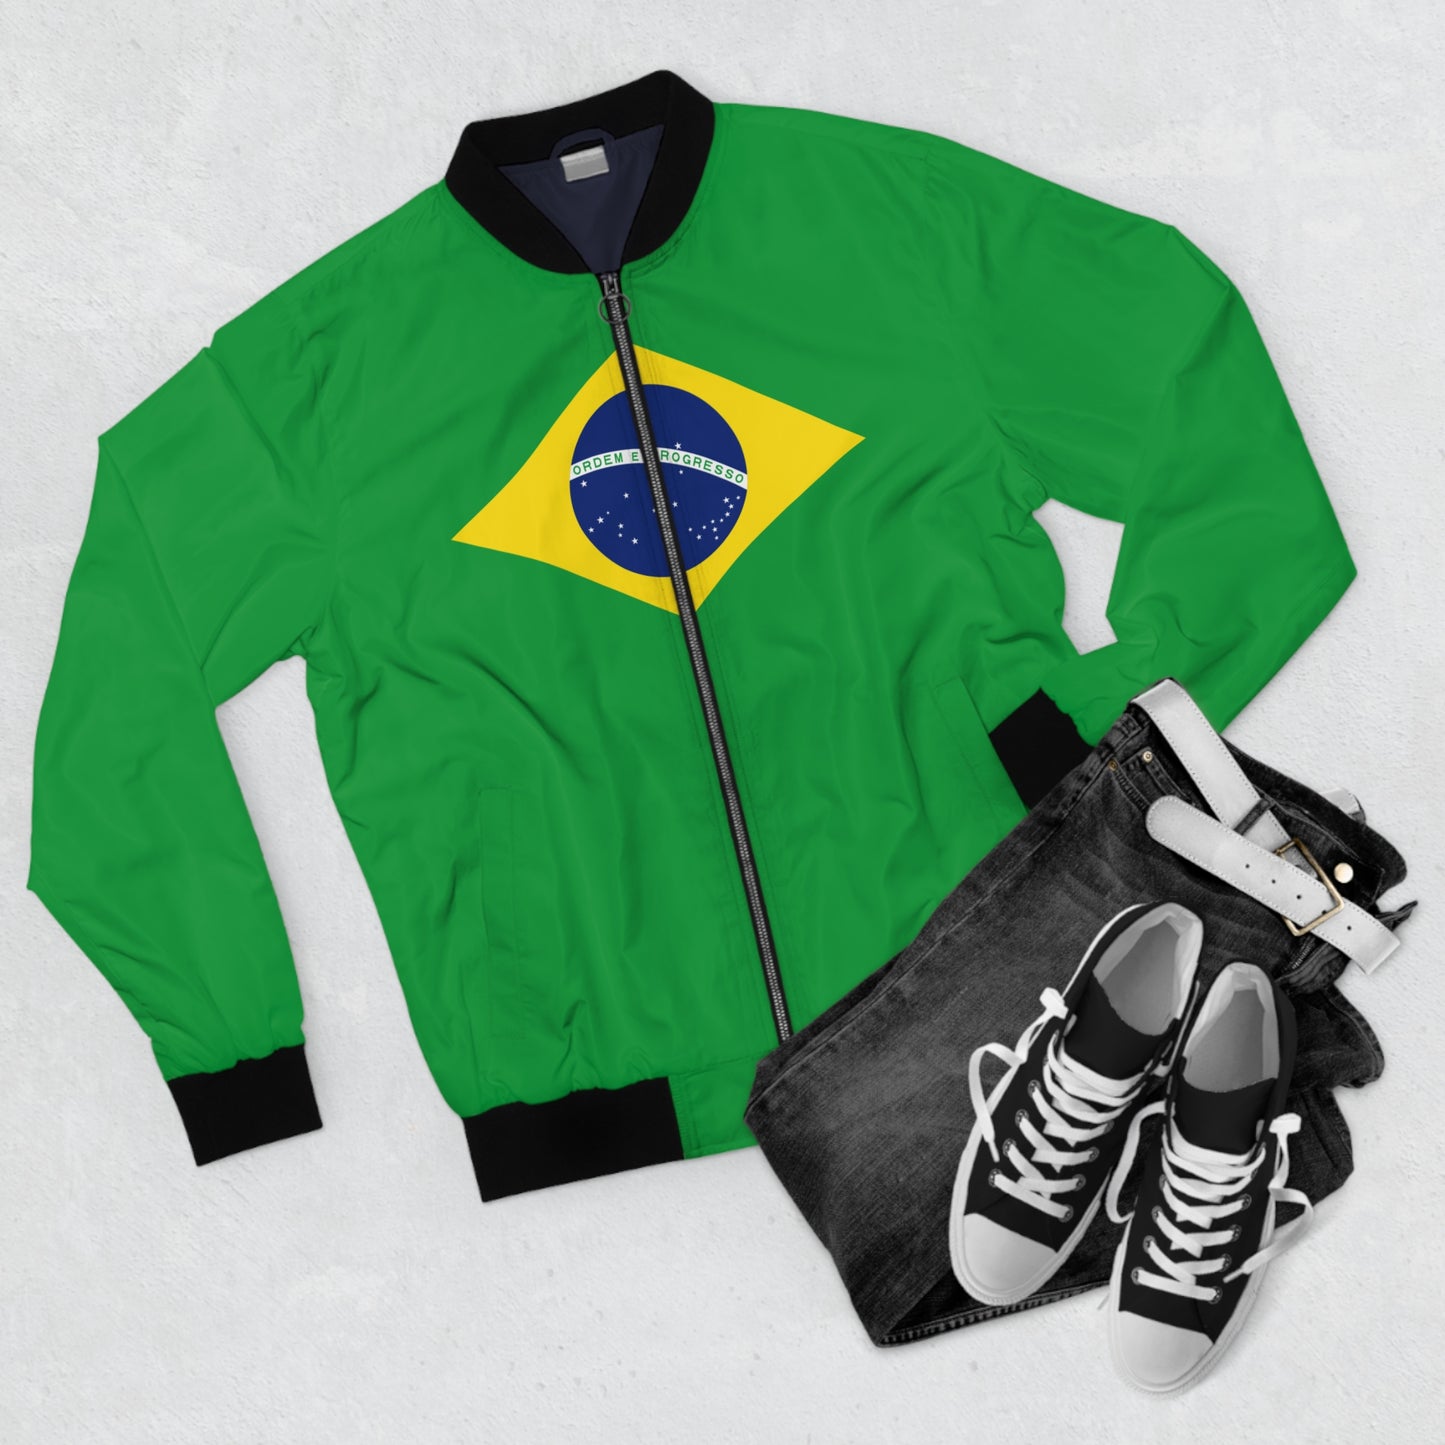 BRAZIL Men's Bomber Jacket